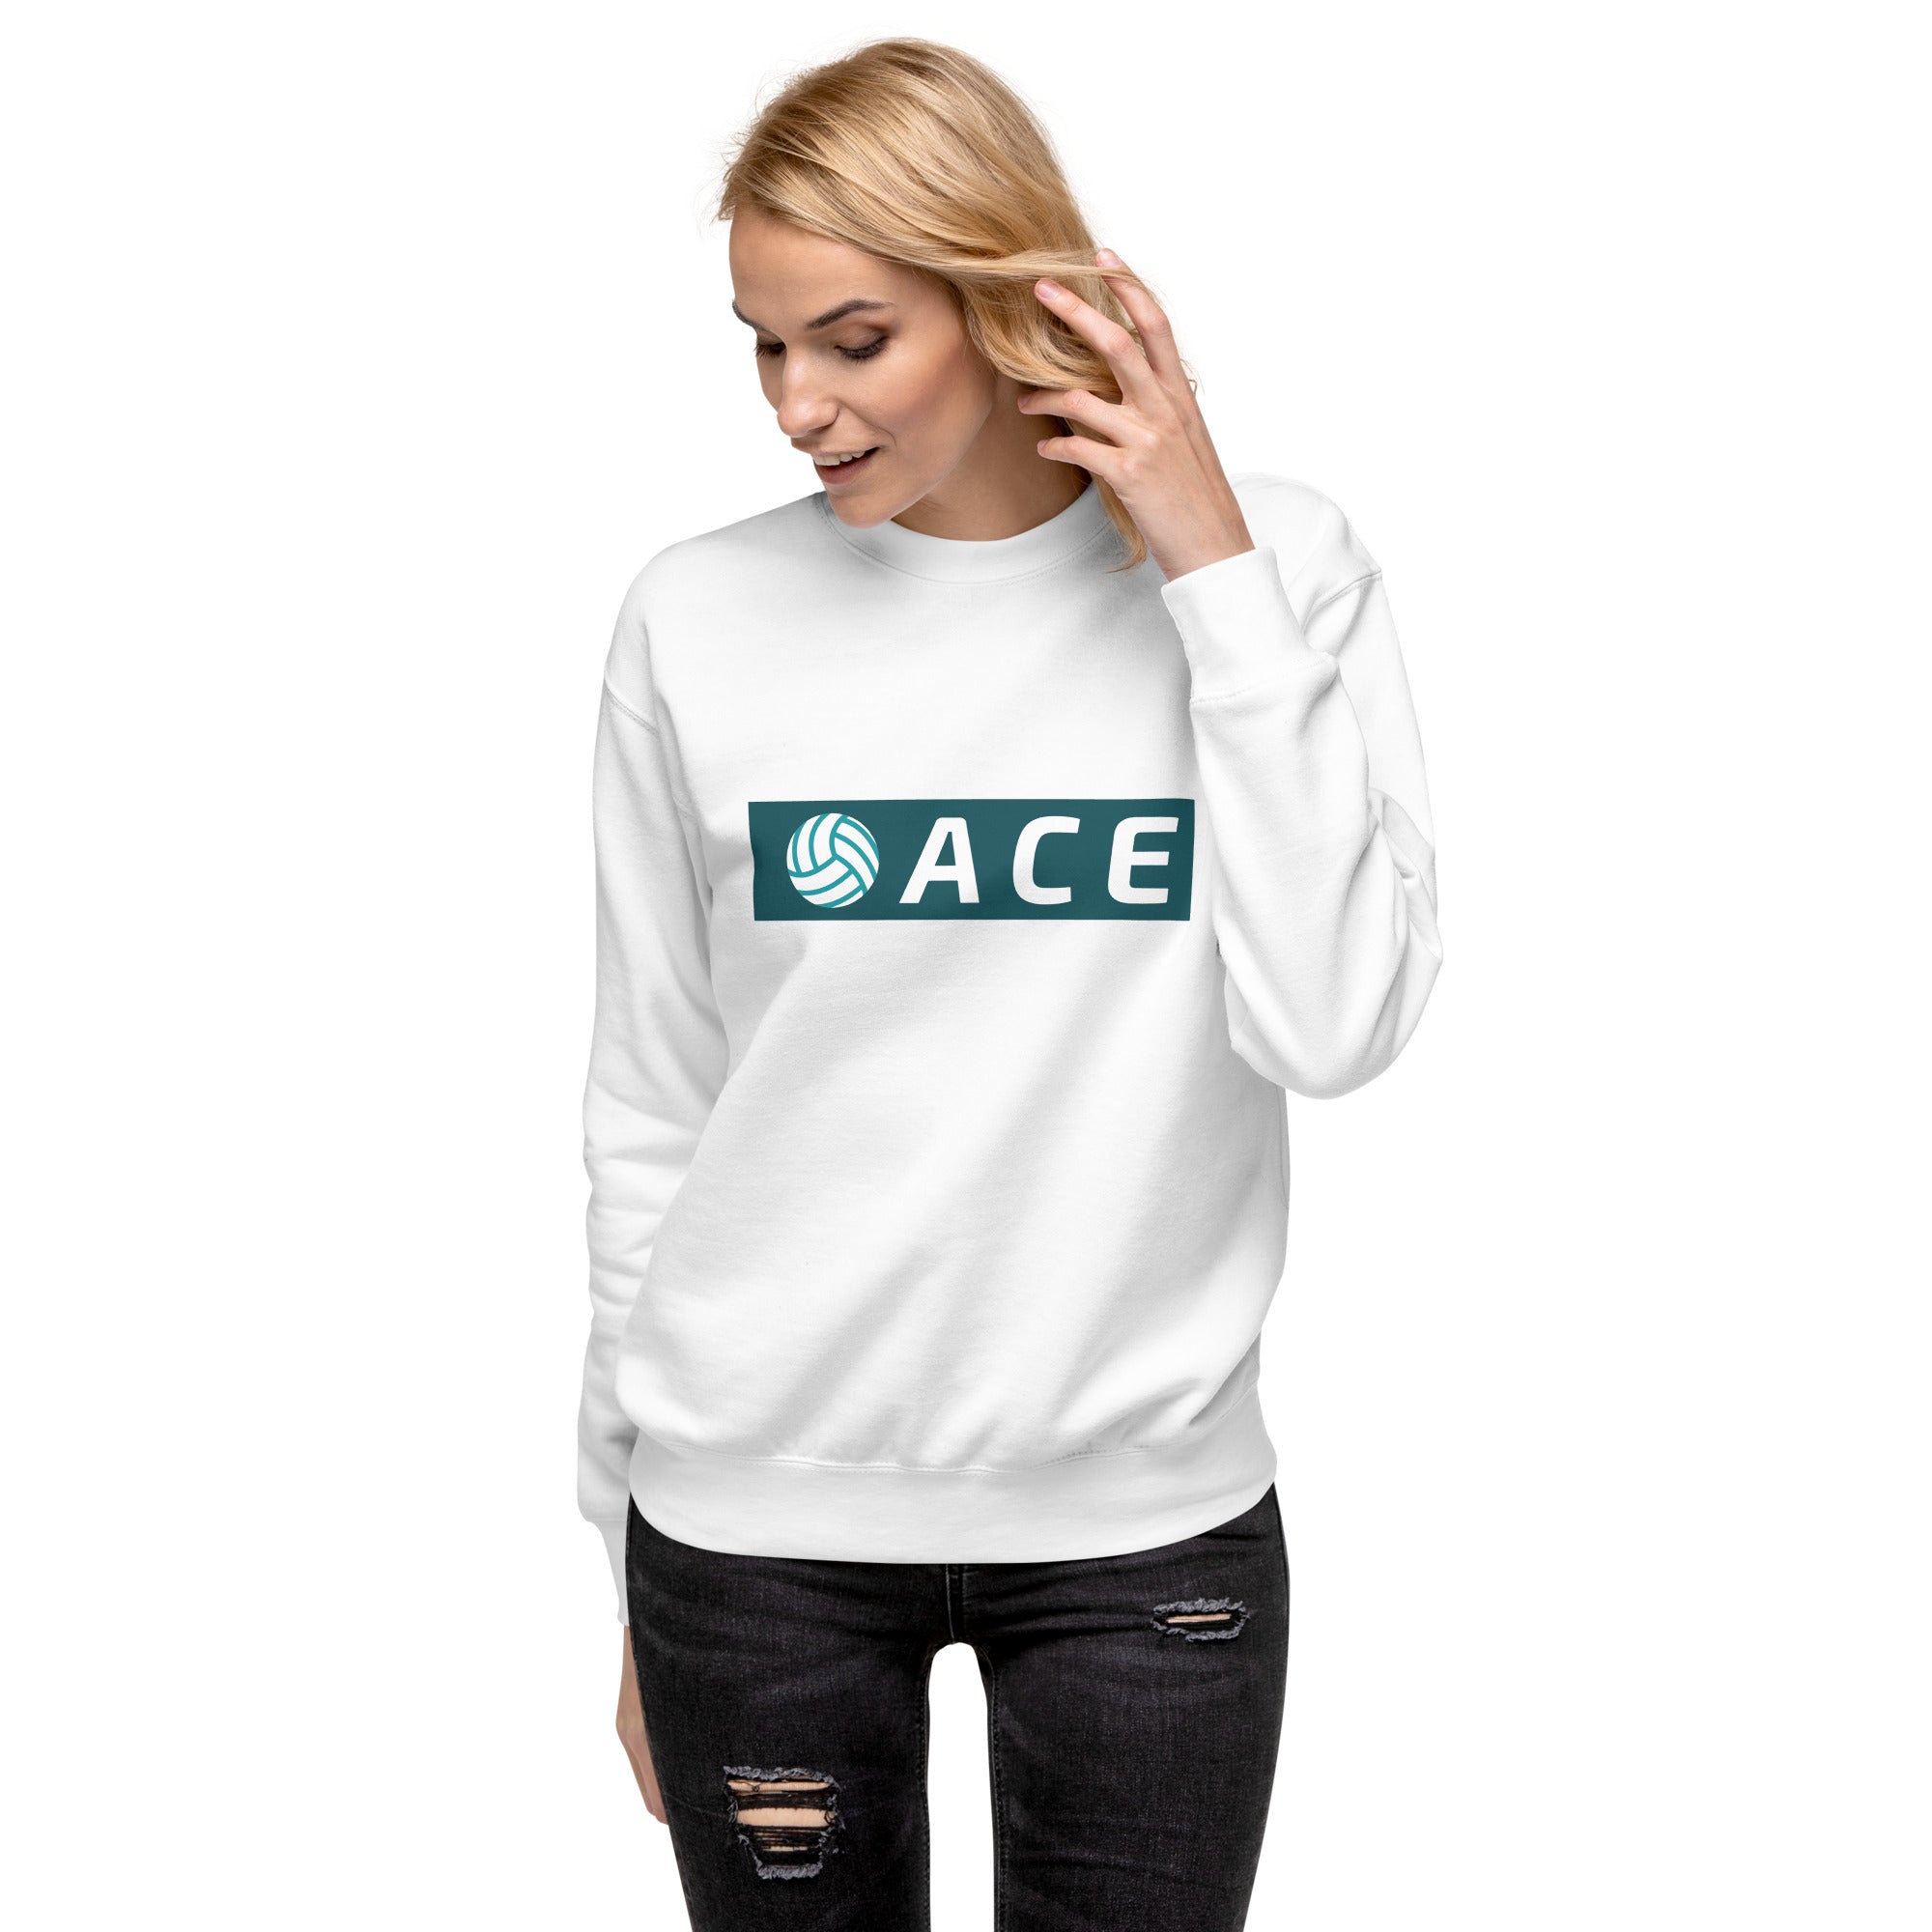 Ace Women's Premium Sweatshirt